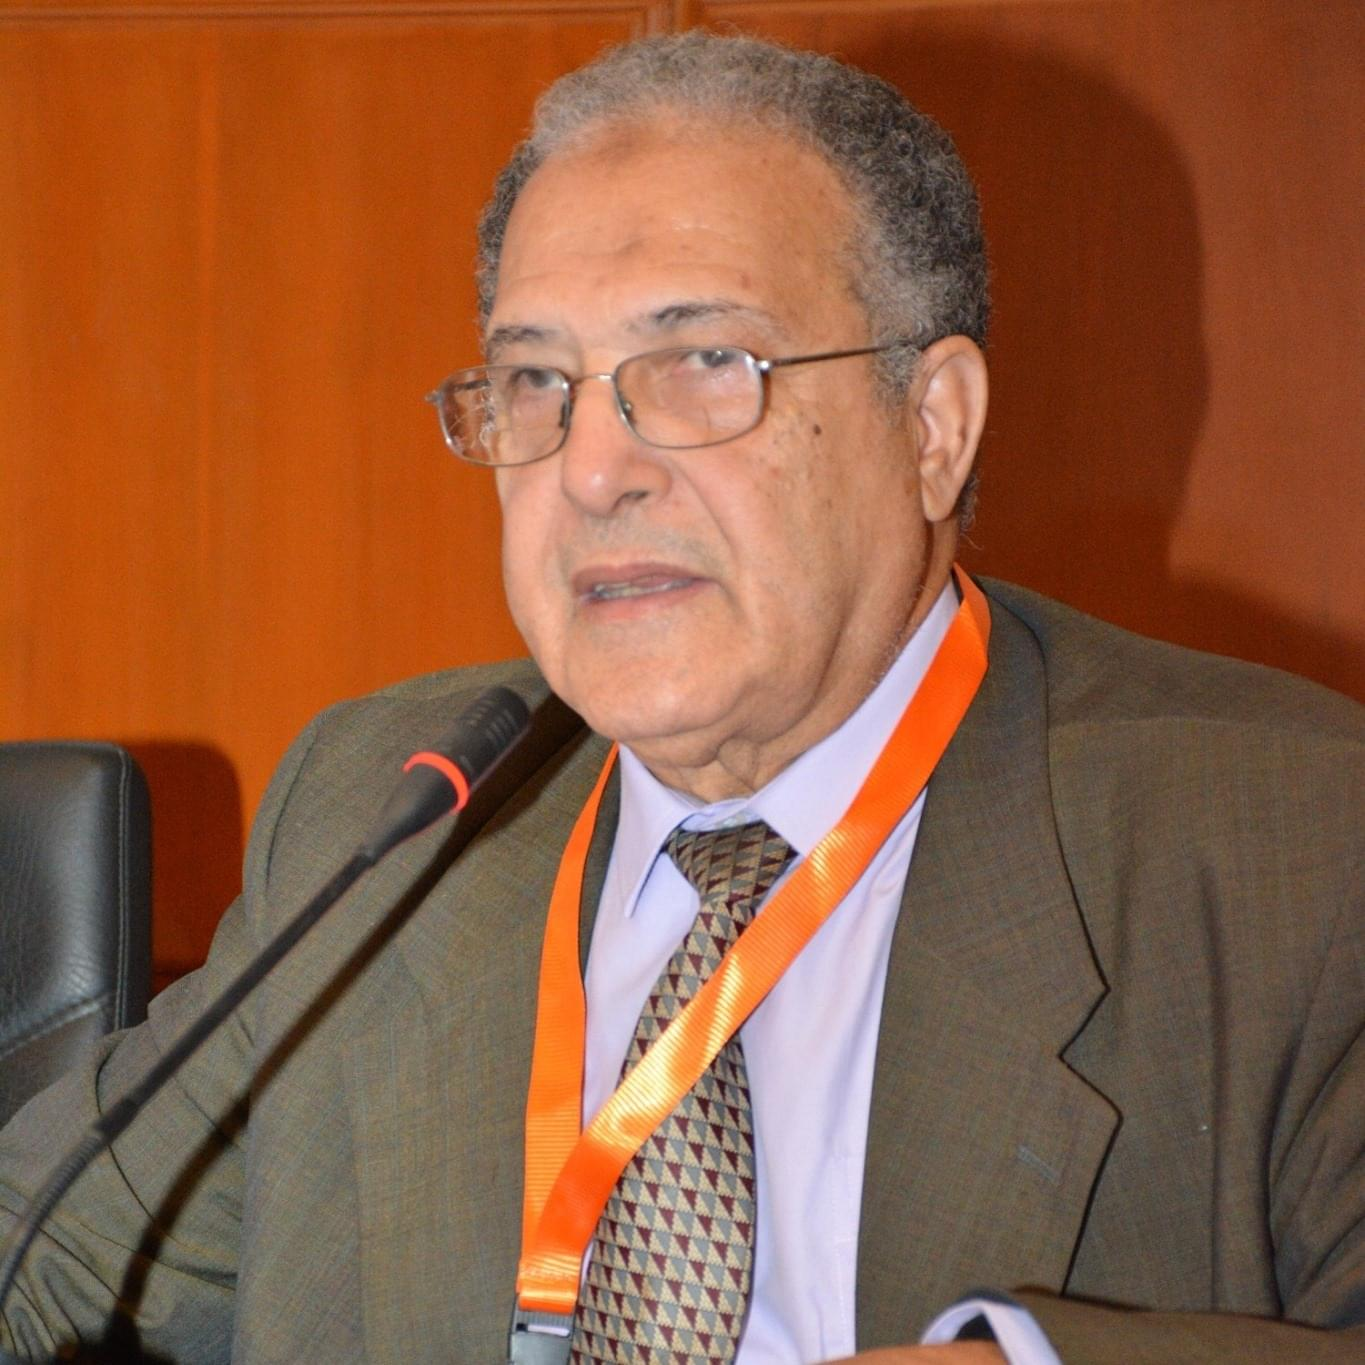  DR. Ahmed G. Hegazi